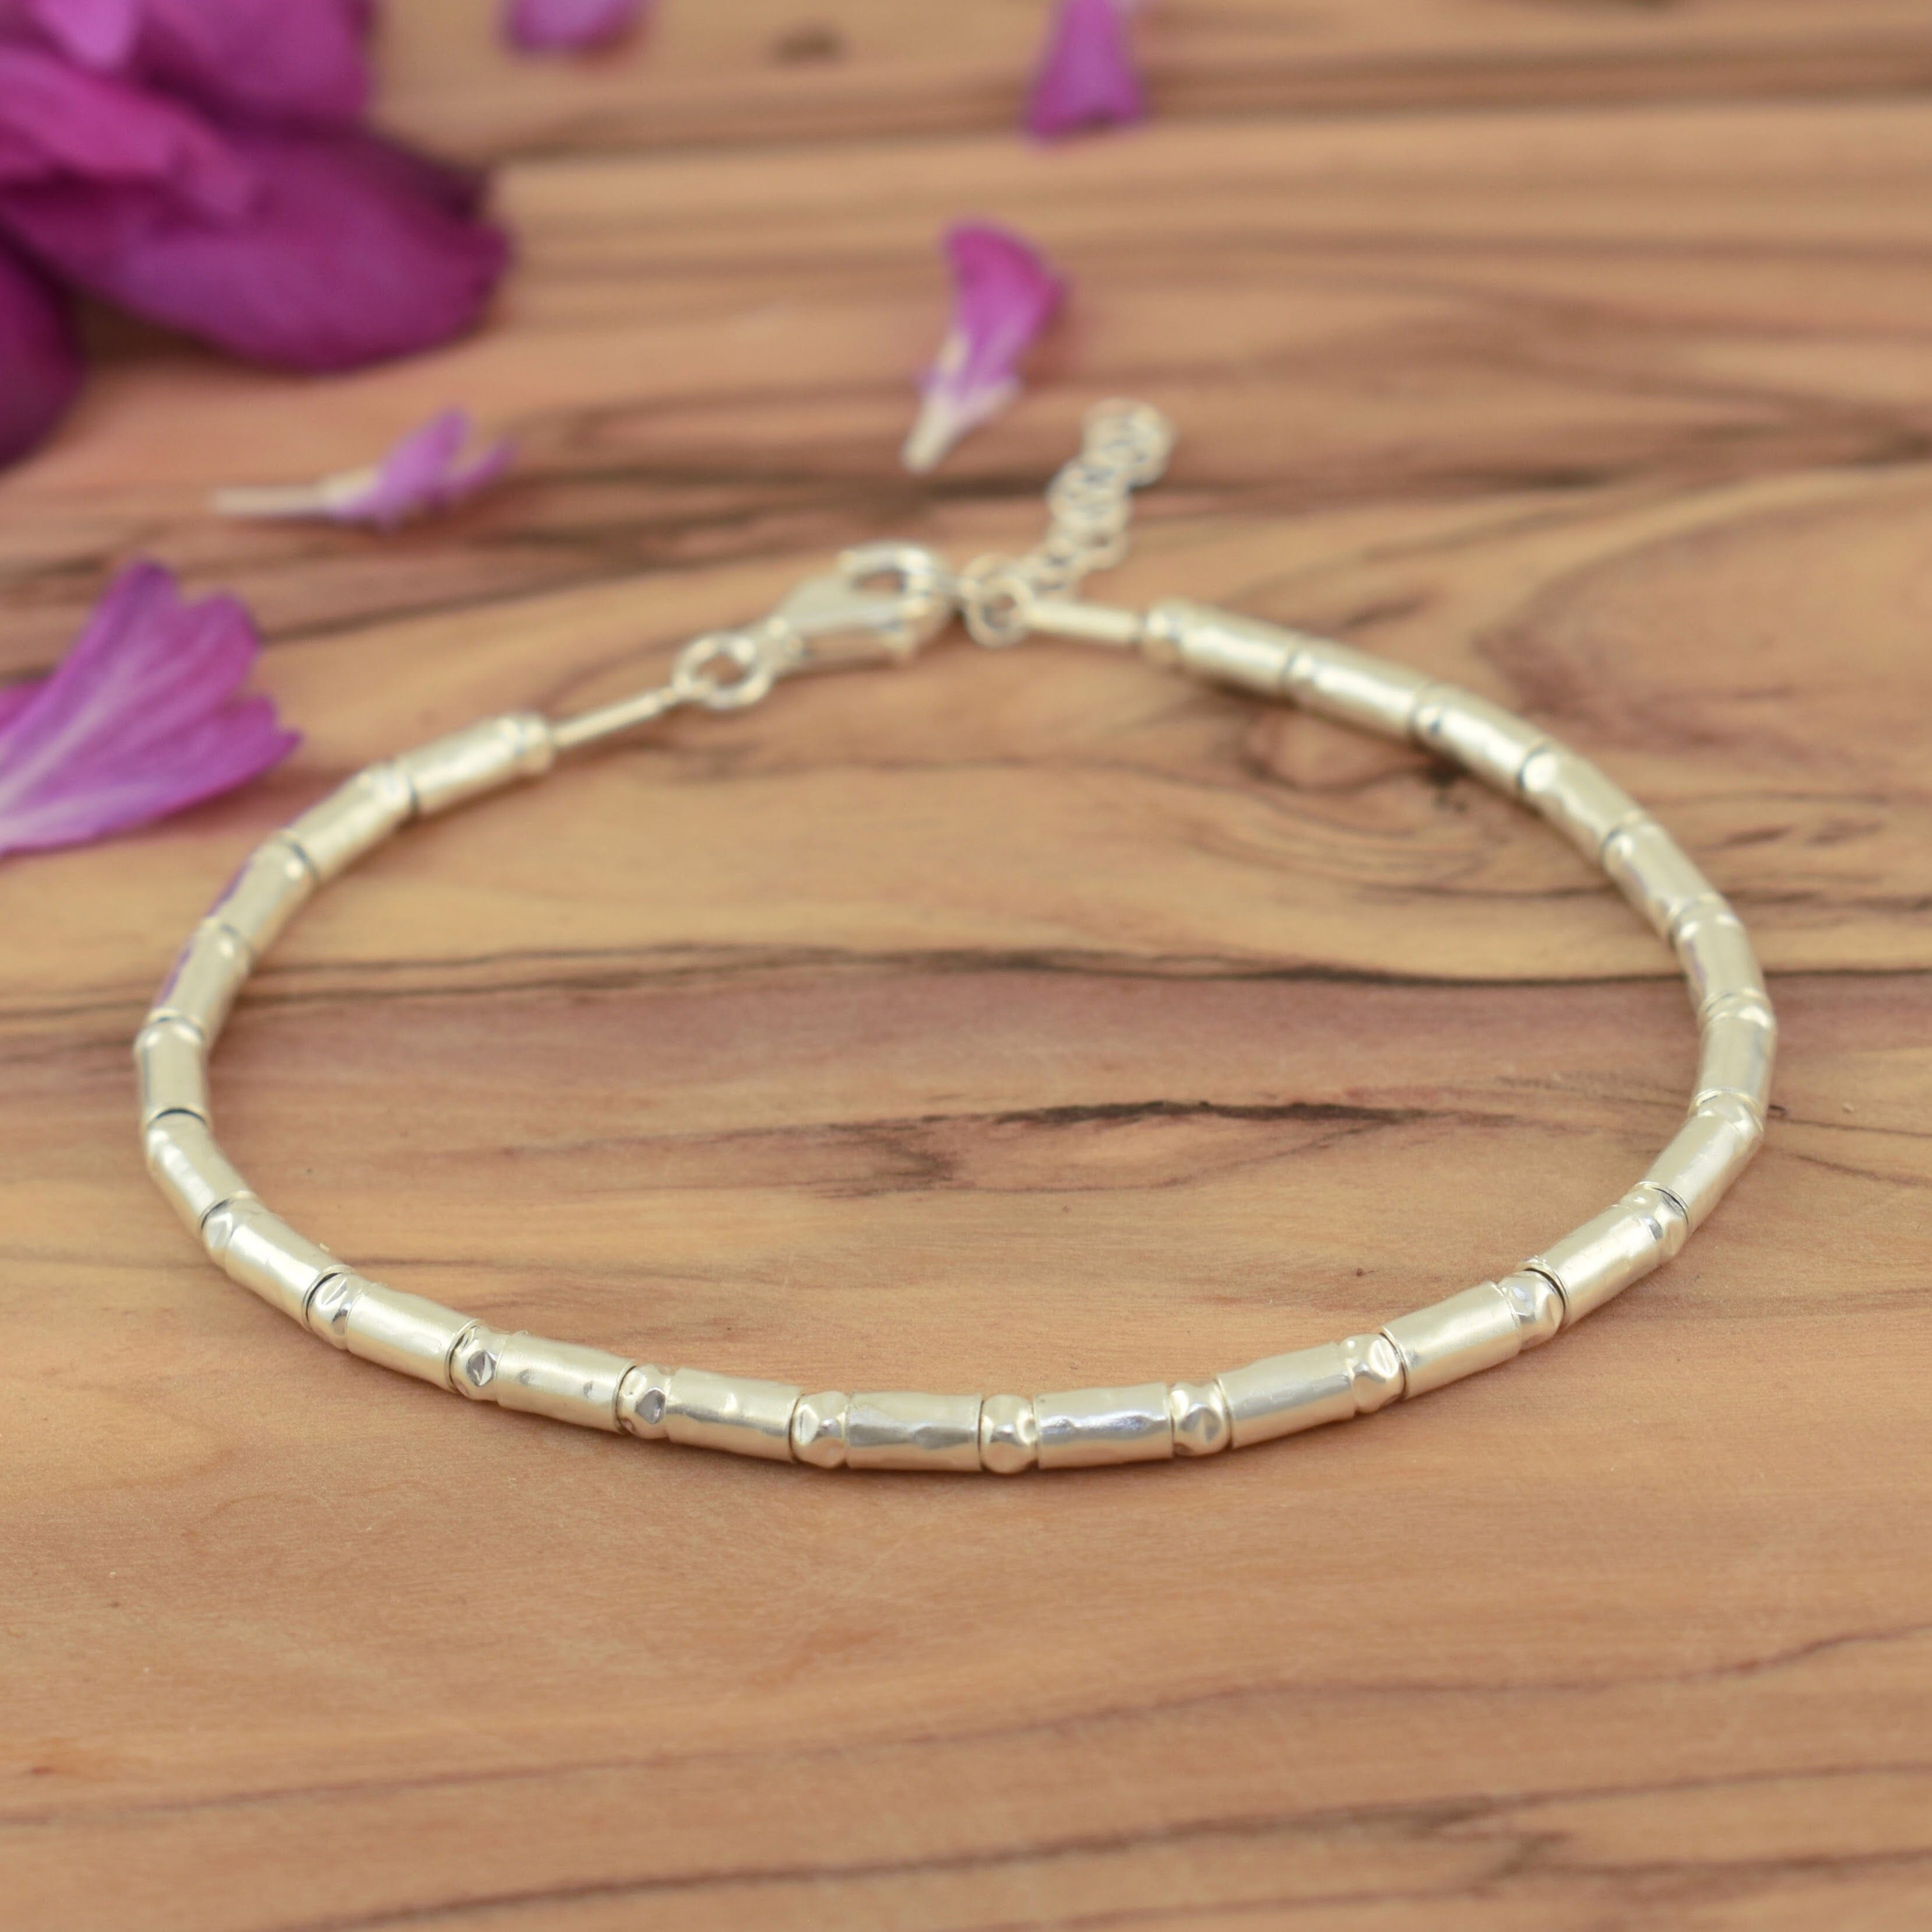 Adjustable sterling silver bracelet with barrel-like beads